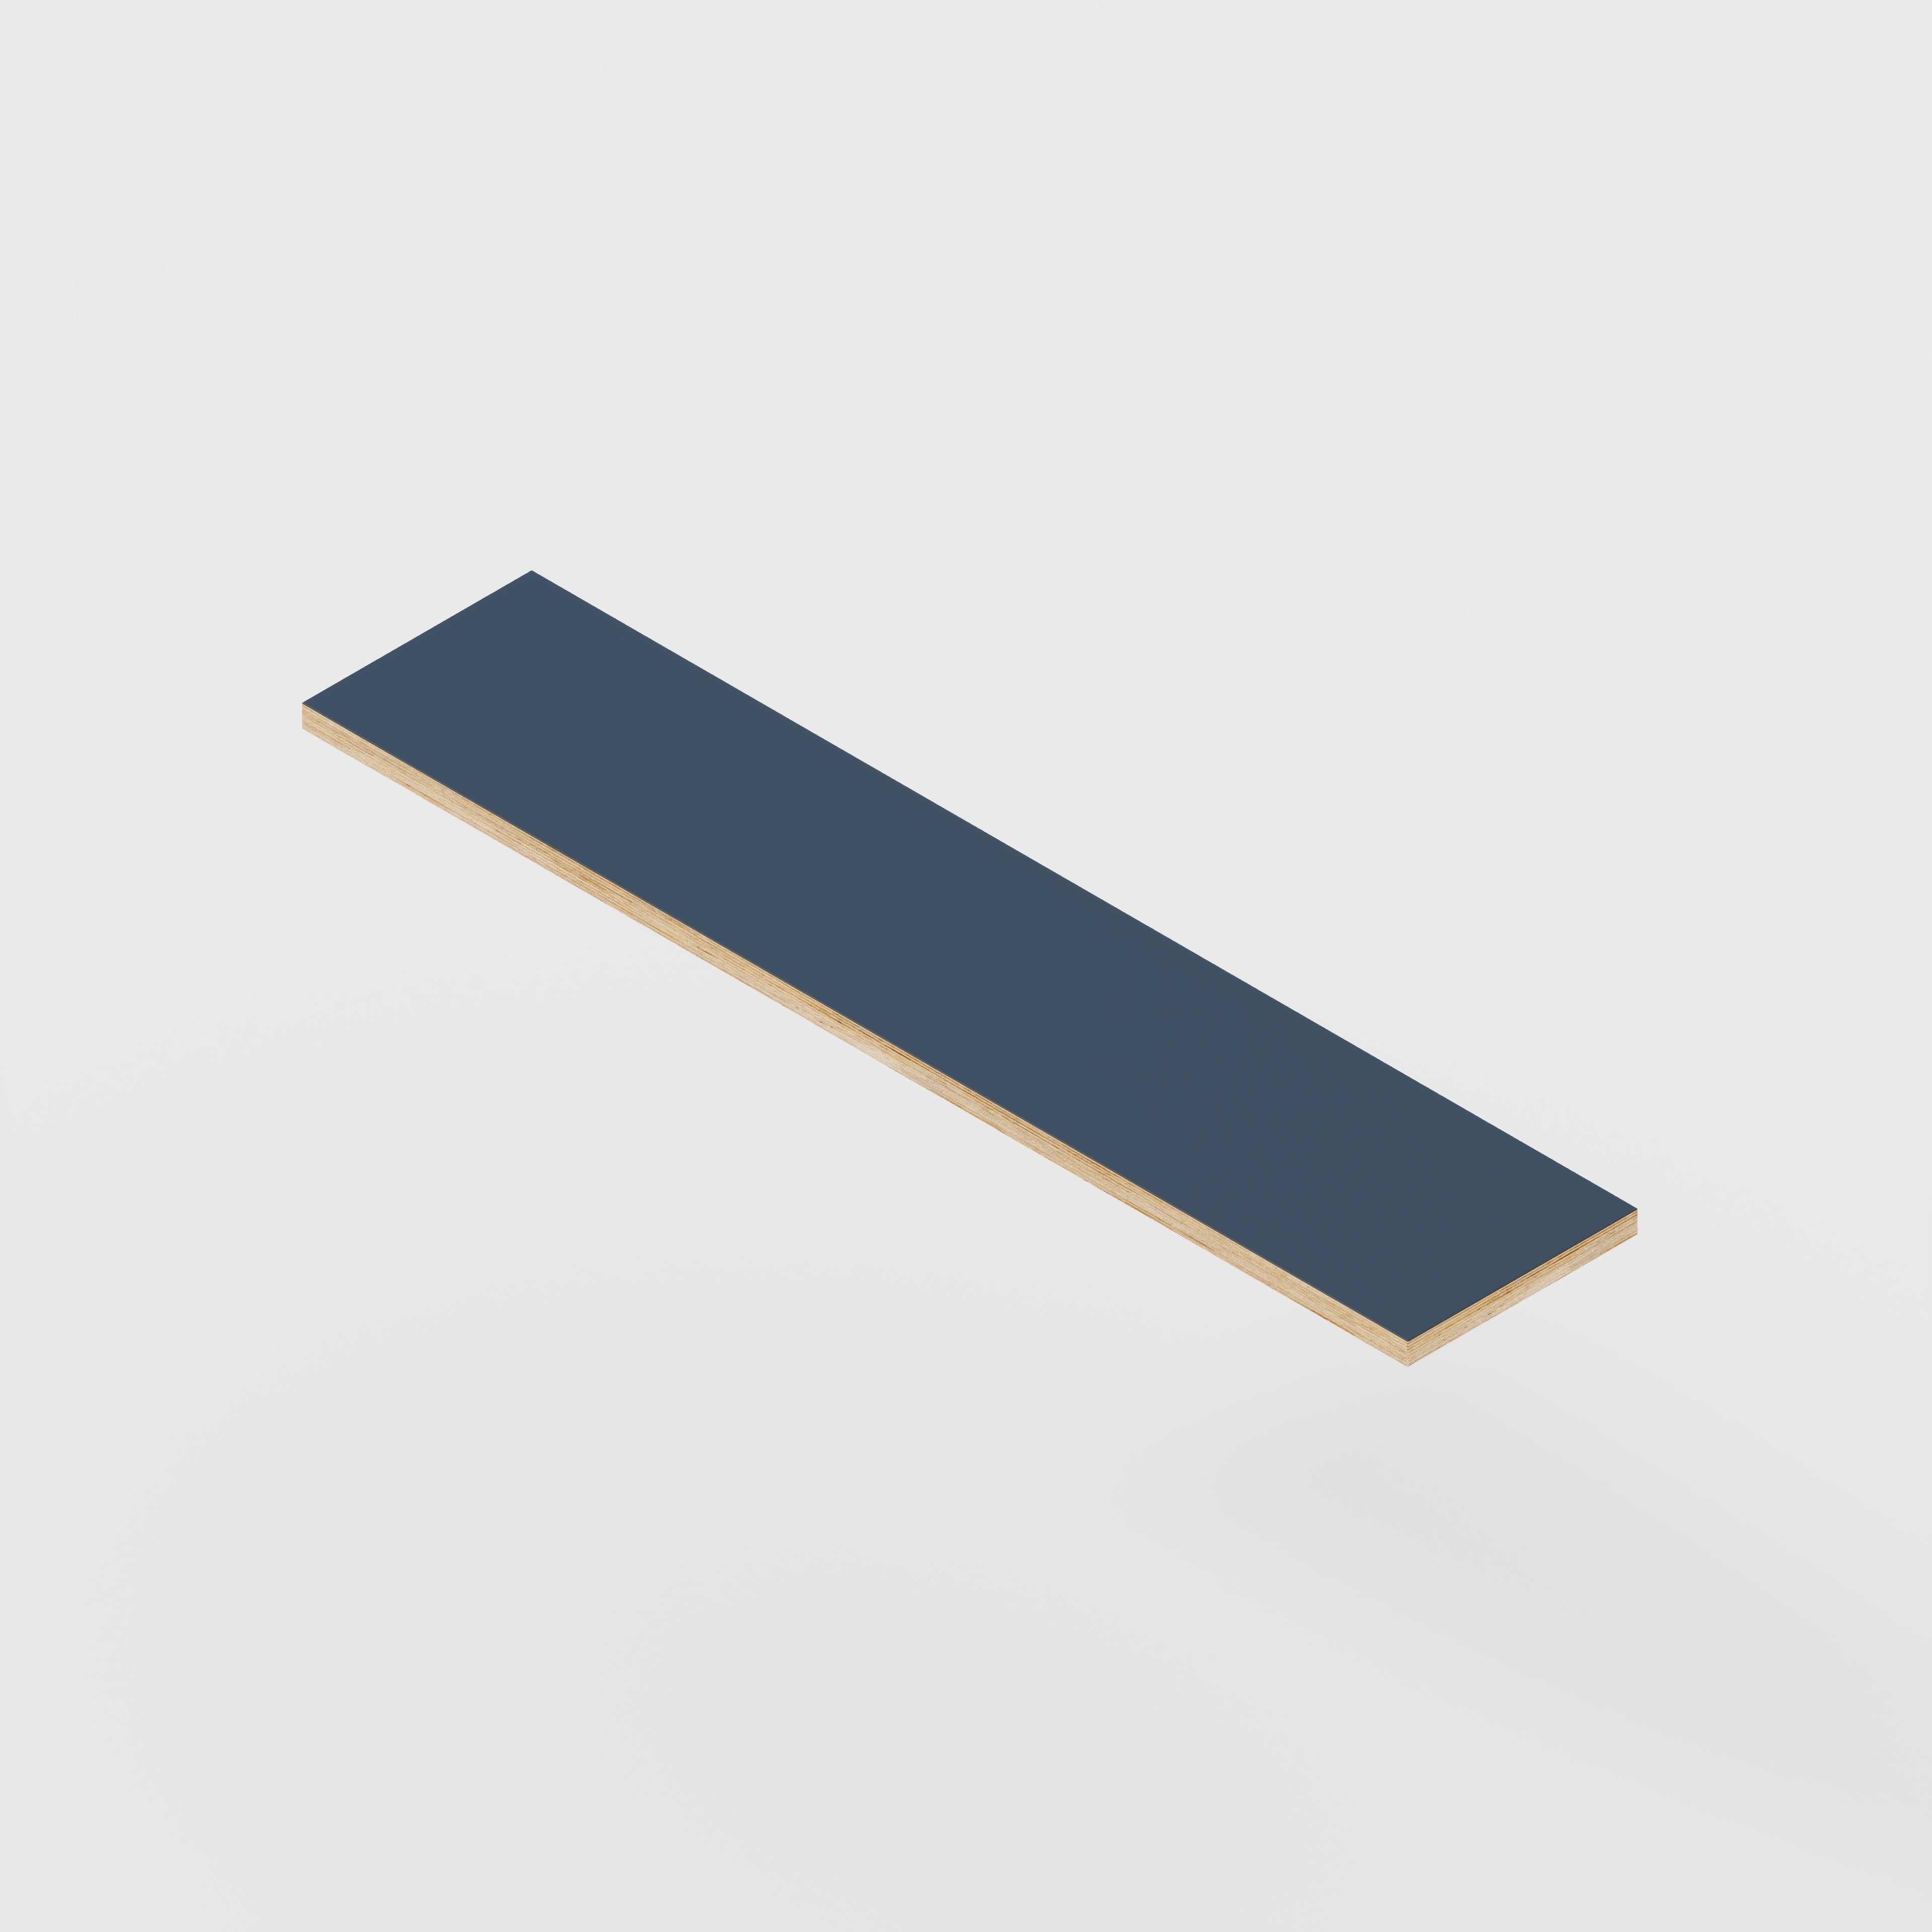 Plywood Shelf - Formica Night Sea Blue - 1600(w) x 250(d) - 24mm